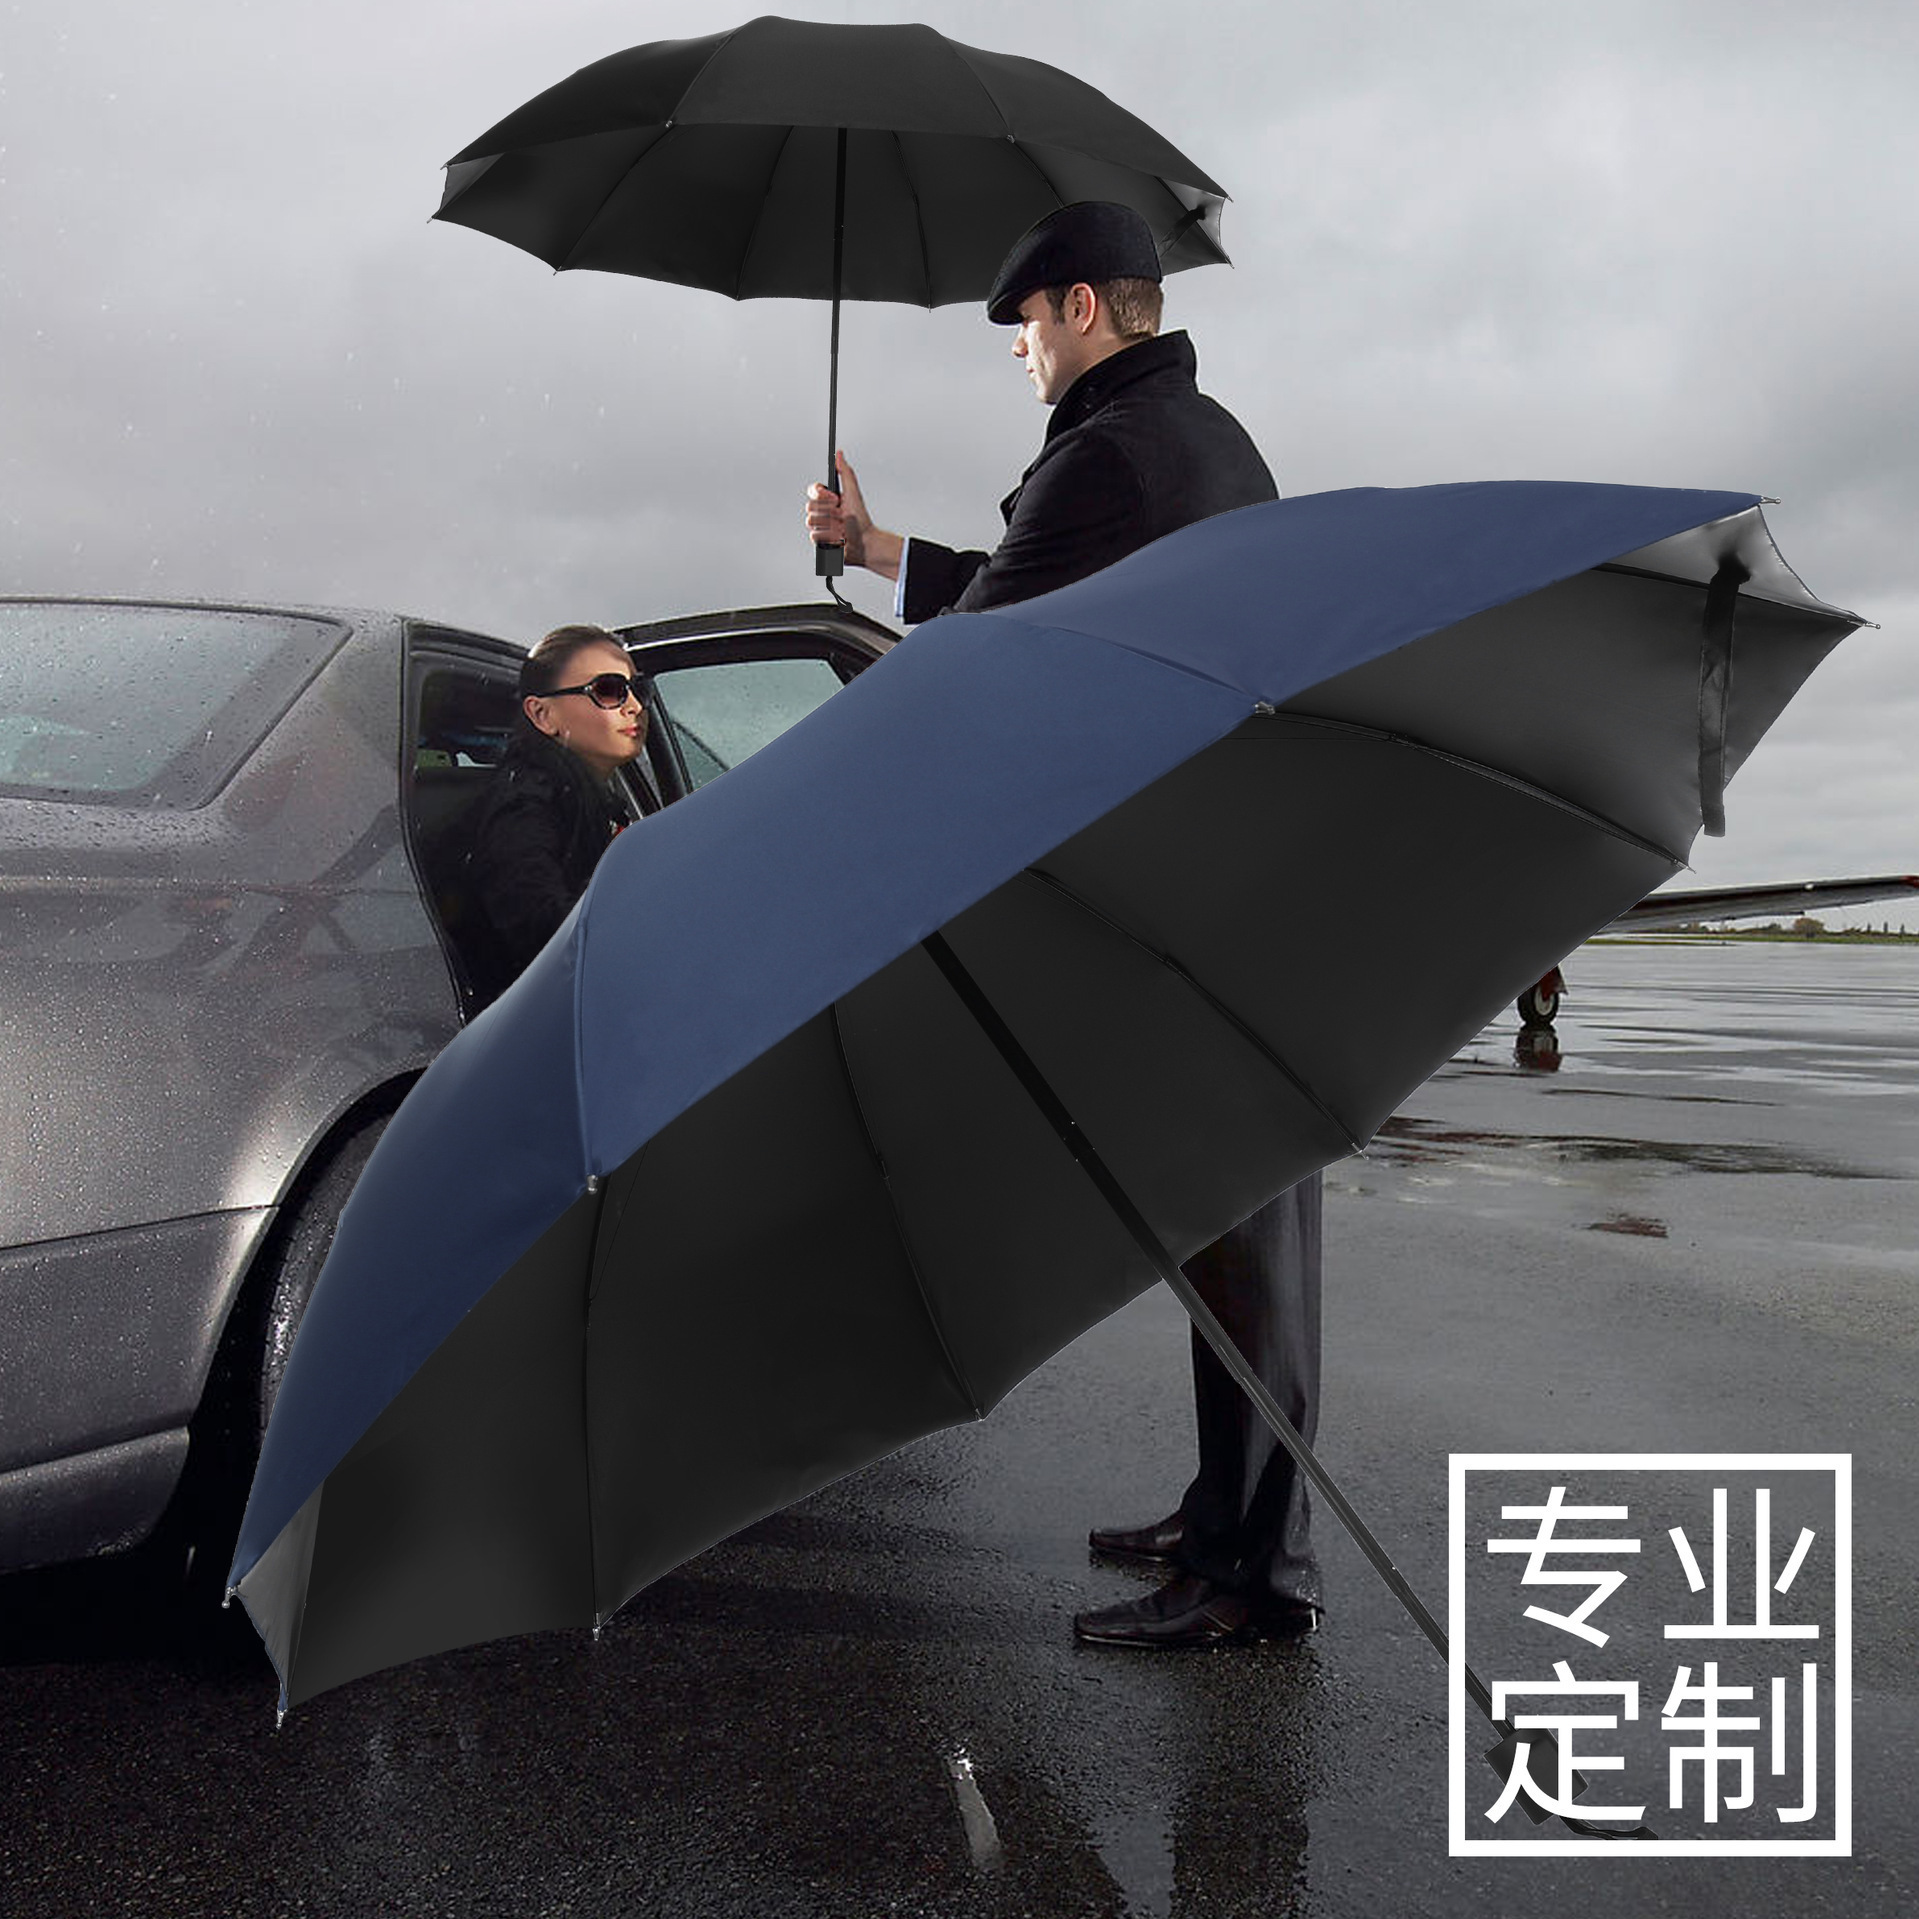 双人超大十骨商务黑胶遮阳雨伞印制大号晴雨两用太阳三折防晒雨伞